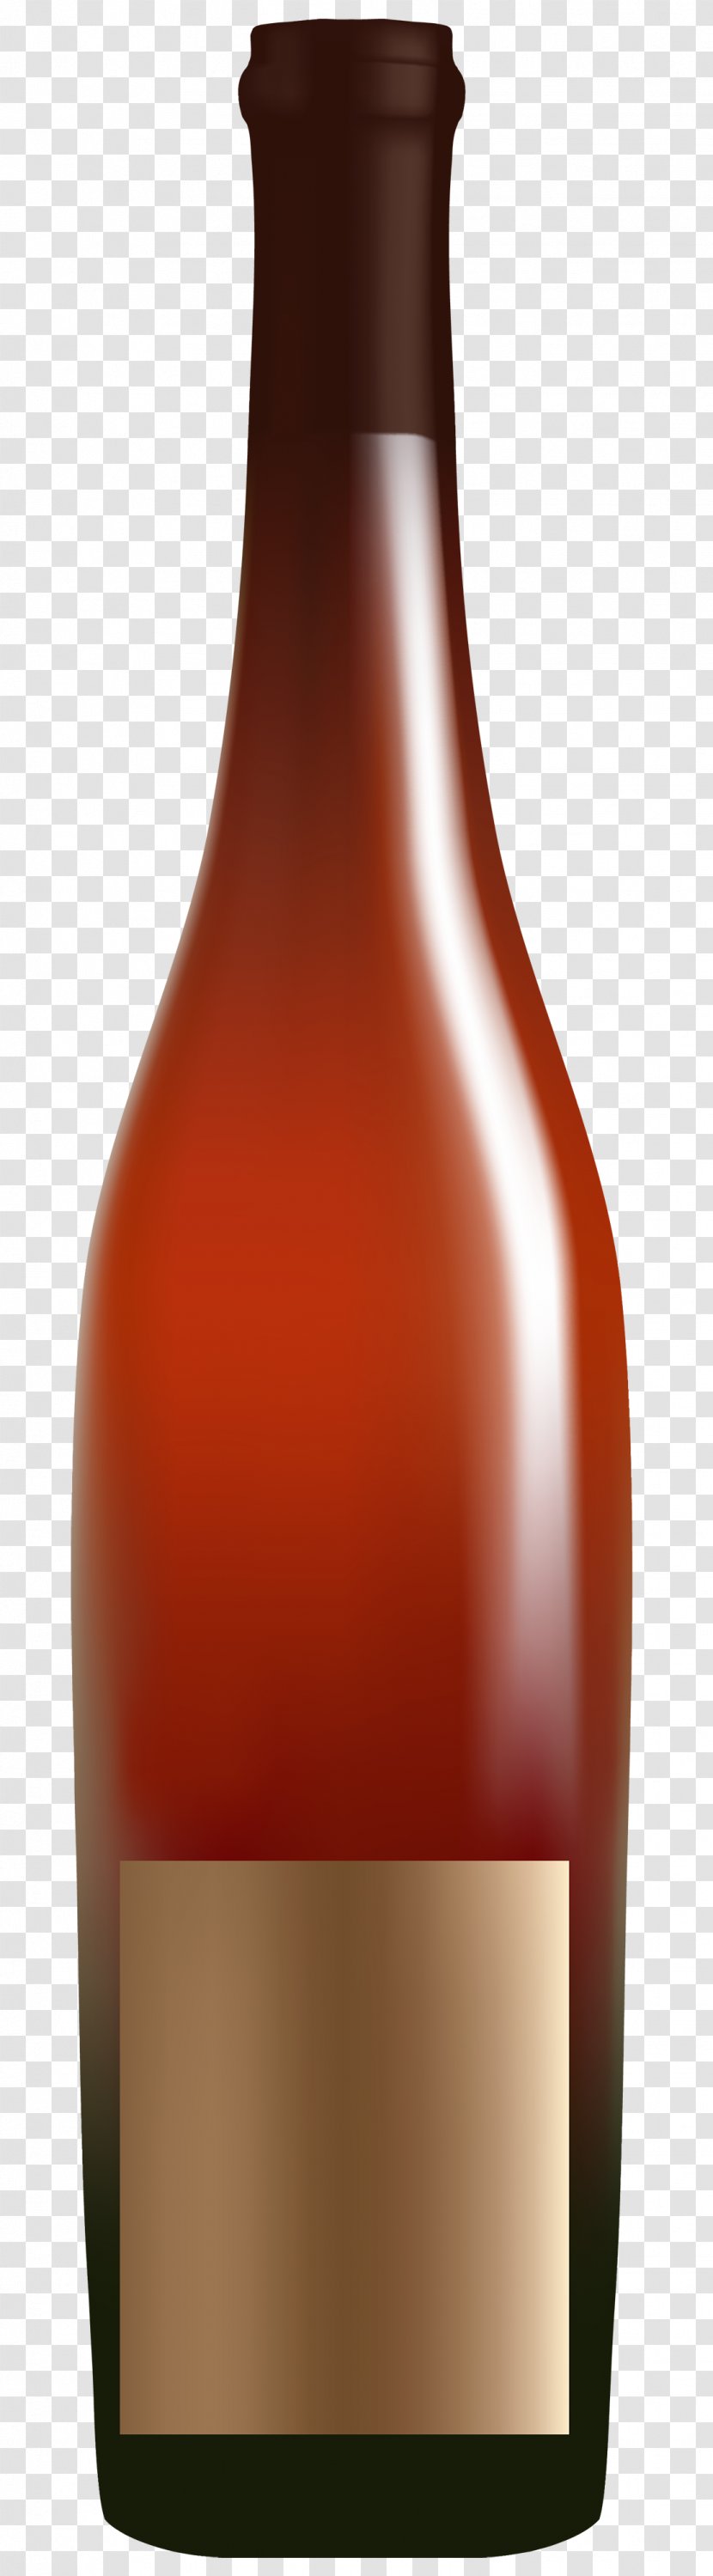 Distilled Beverage Beer Wine Bottle Bourbon Whiskey Transparent PNG